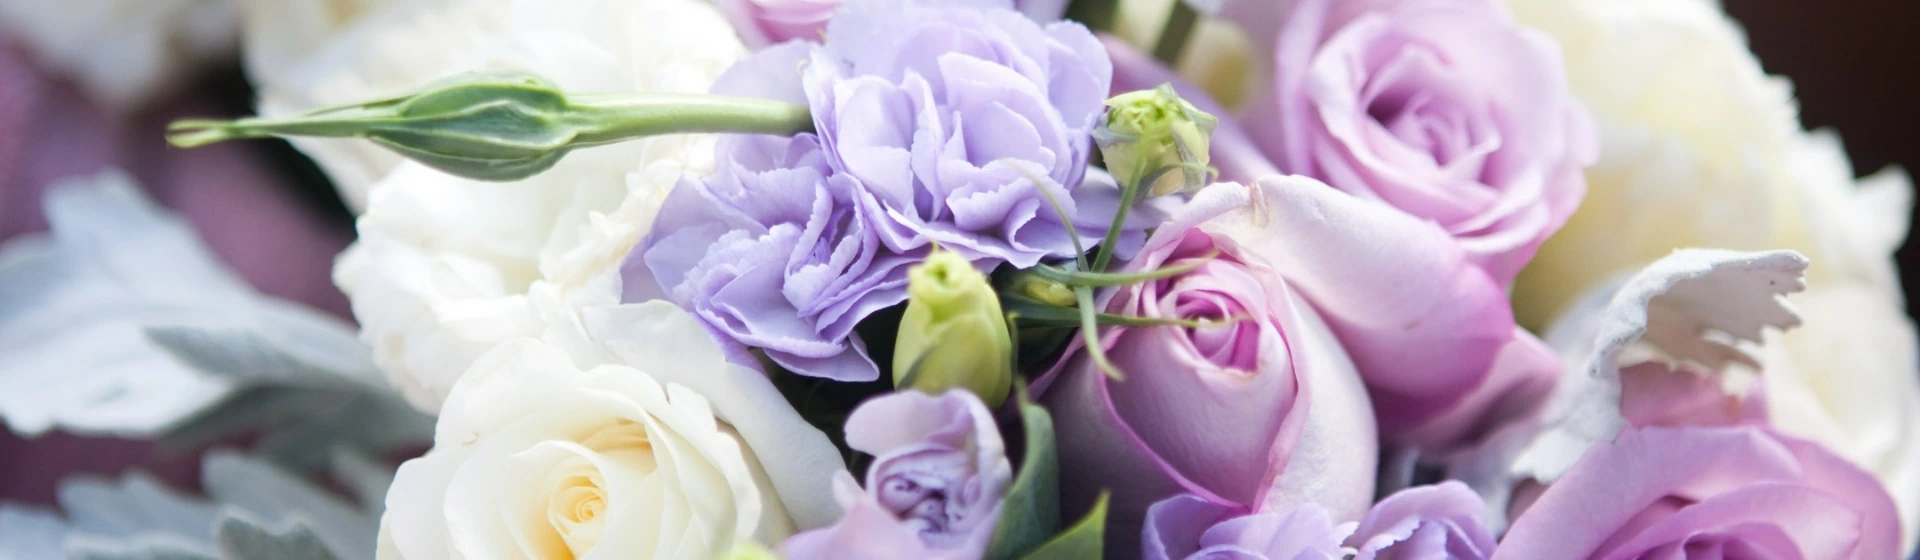 Bukiet z fioletowymi, białymi i różowymi kwiatami